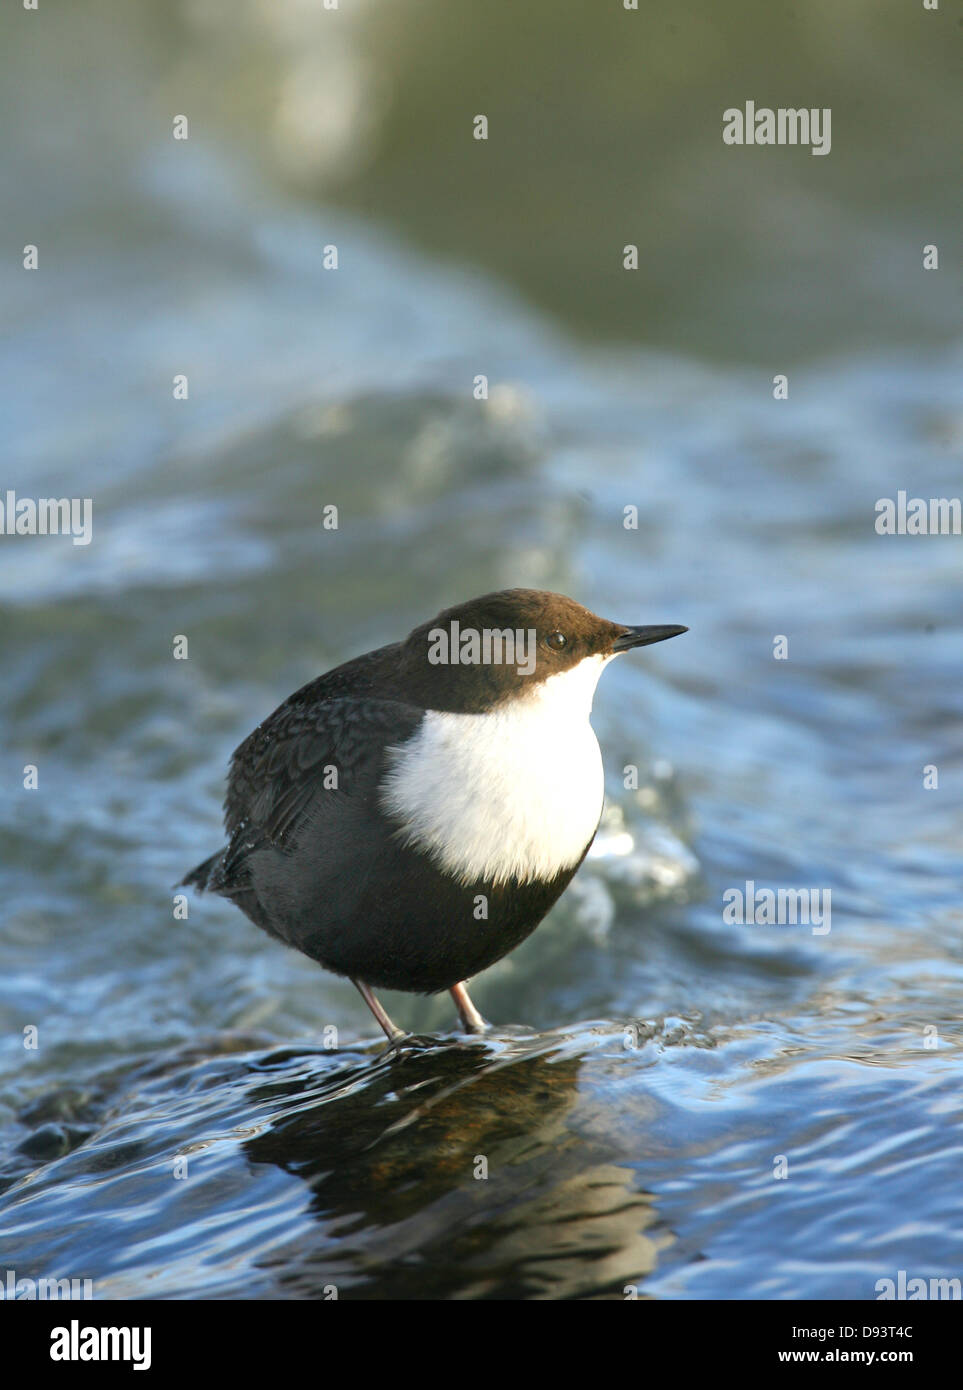 Dipper bird standing in water Stock Photo